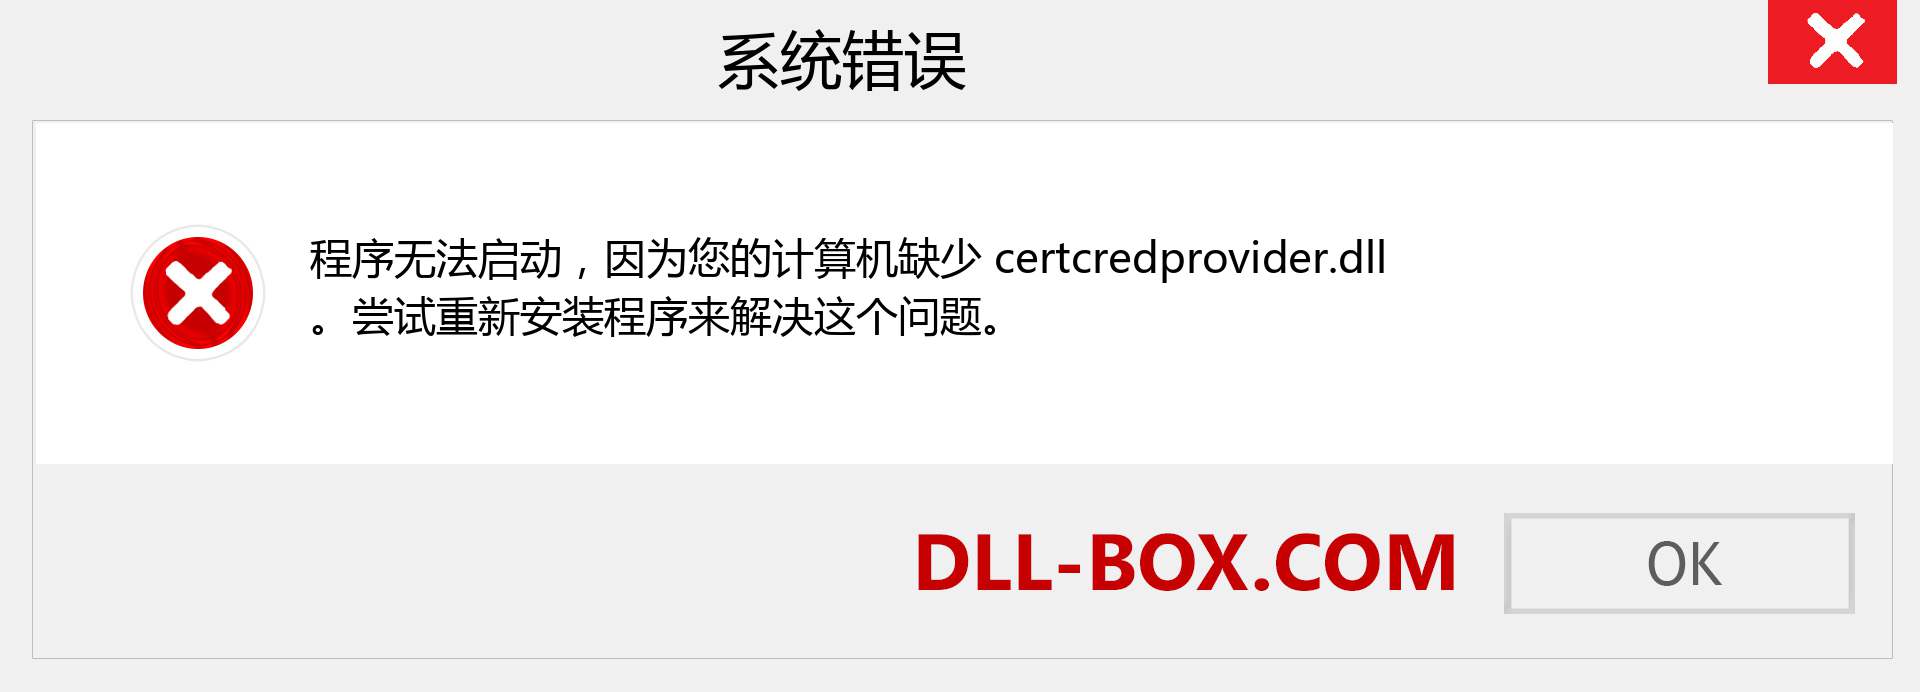 certcredprovider.dll 文件丢失？。 适用于 Windows 7、8、10 的下载 - 修复 Windows、照片、图像上的 certcredprovider dll 丢失错误